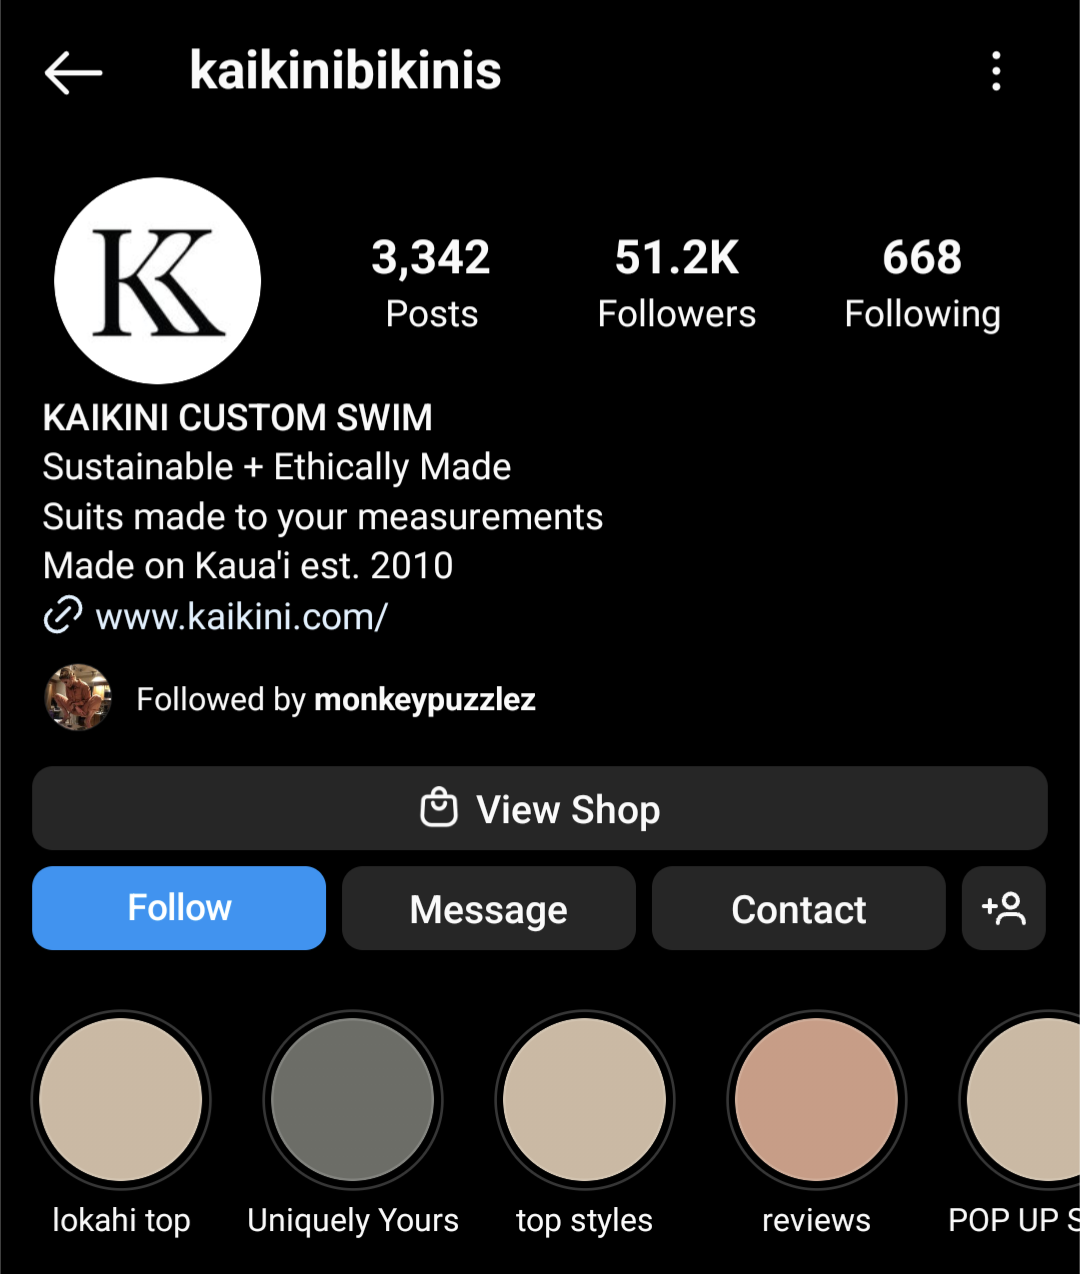 Swimwear brand Kaikini Bikinis Instagram bio showing its brand values